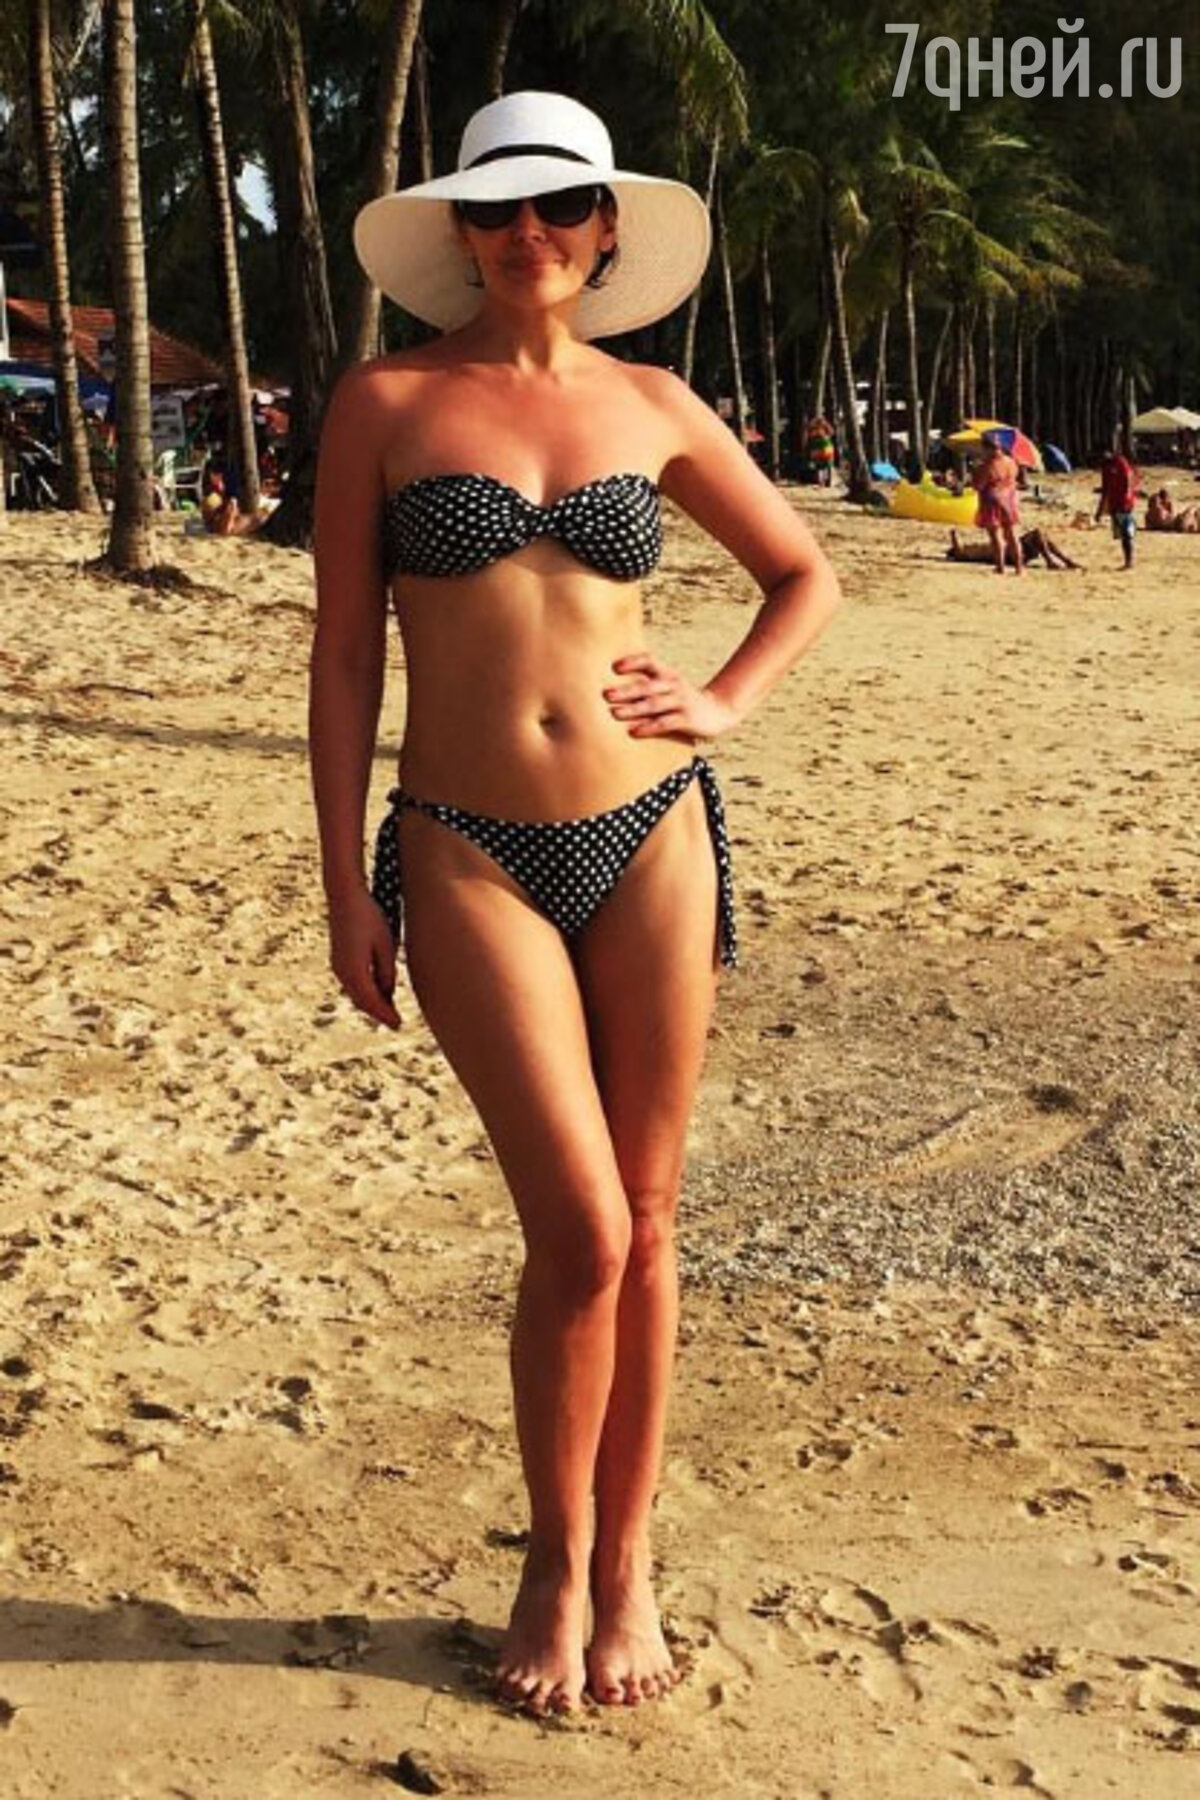 43-летняя Екатерина Волкова похвасталась фигурой в бикини - 7Дней.ру